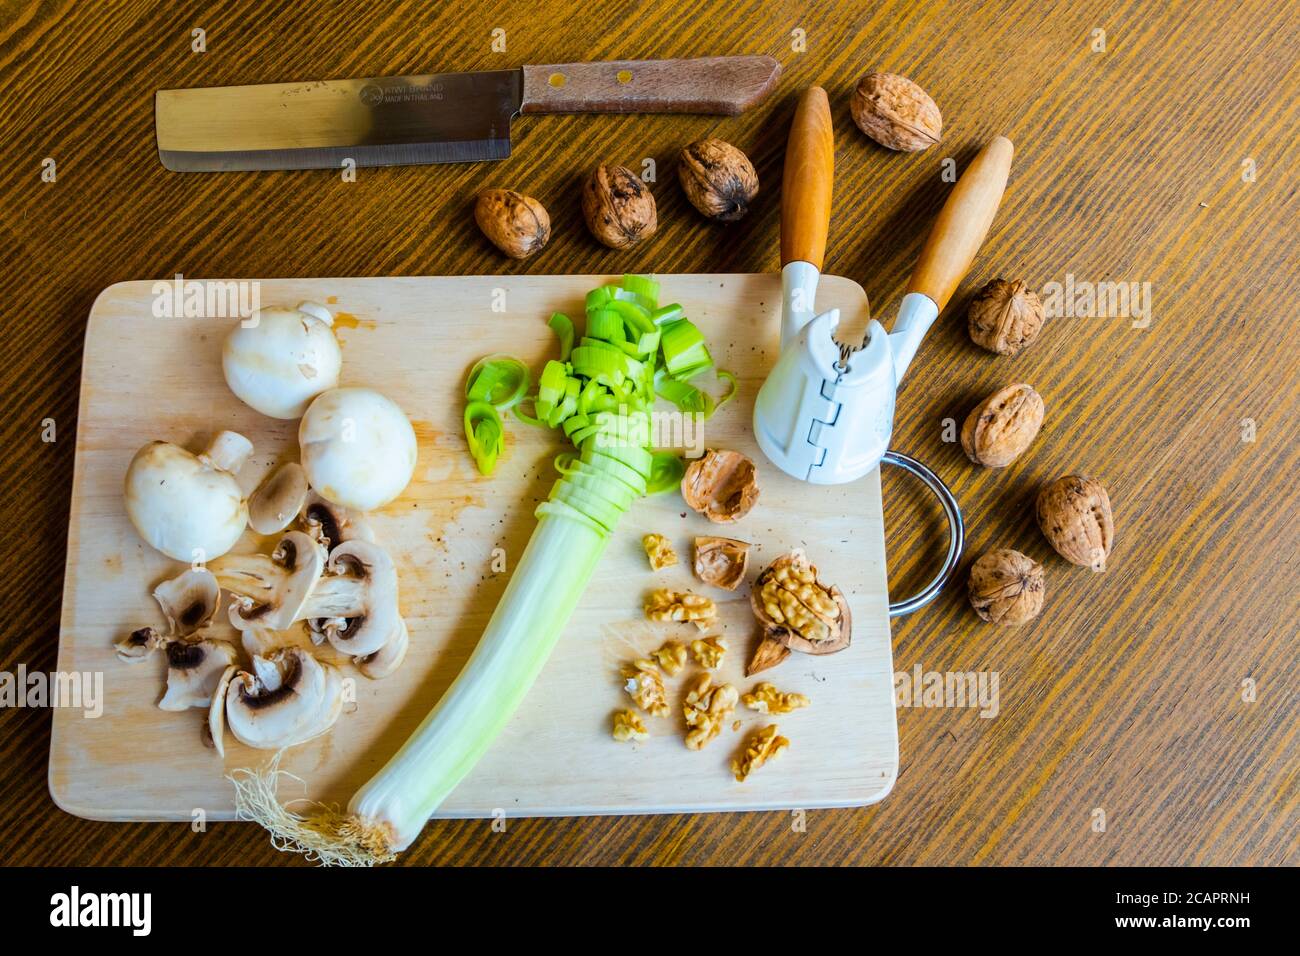 Table avec produits diététiques végétariens, y compris noix, champignons et poireaux Banque D'Images